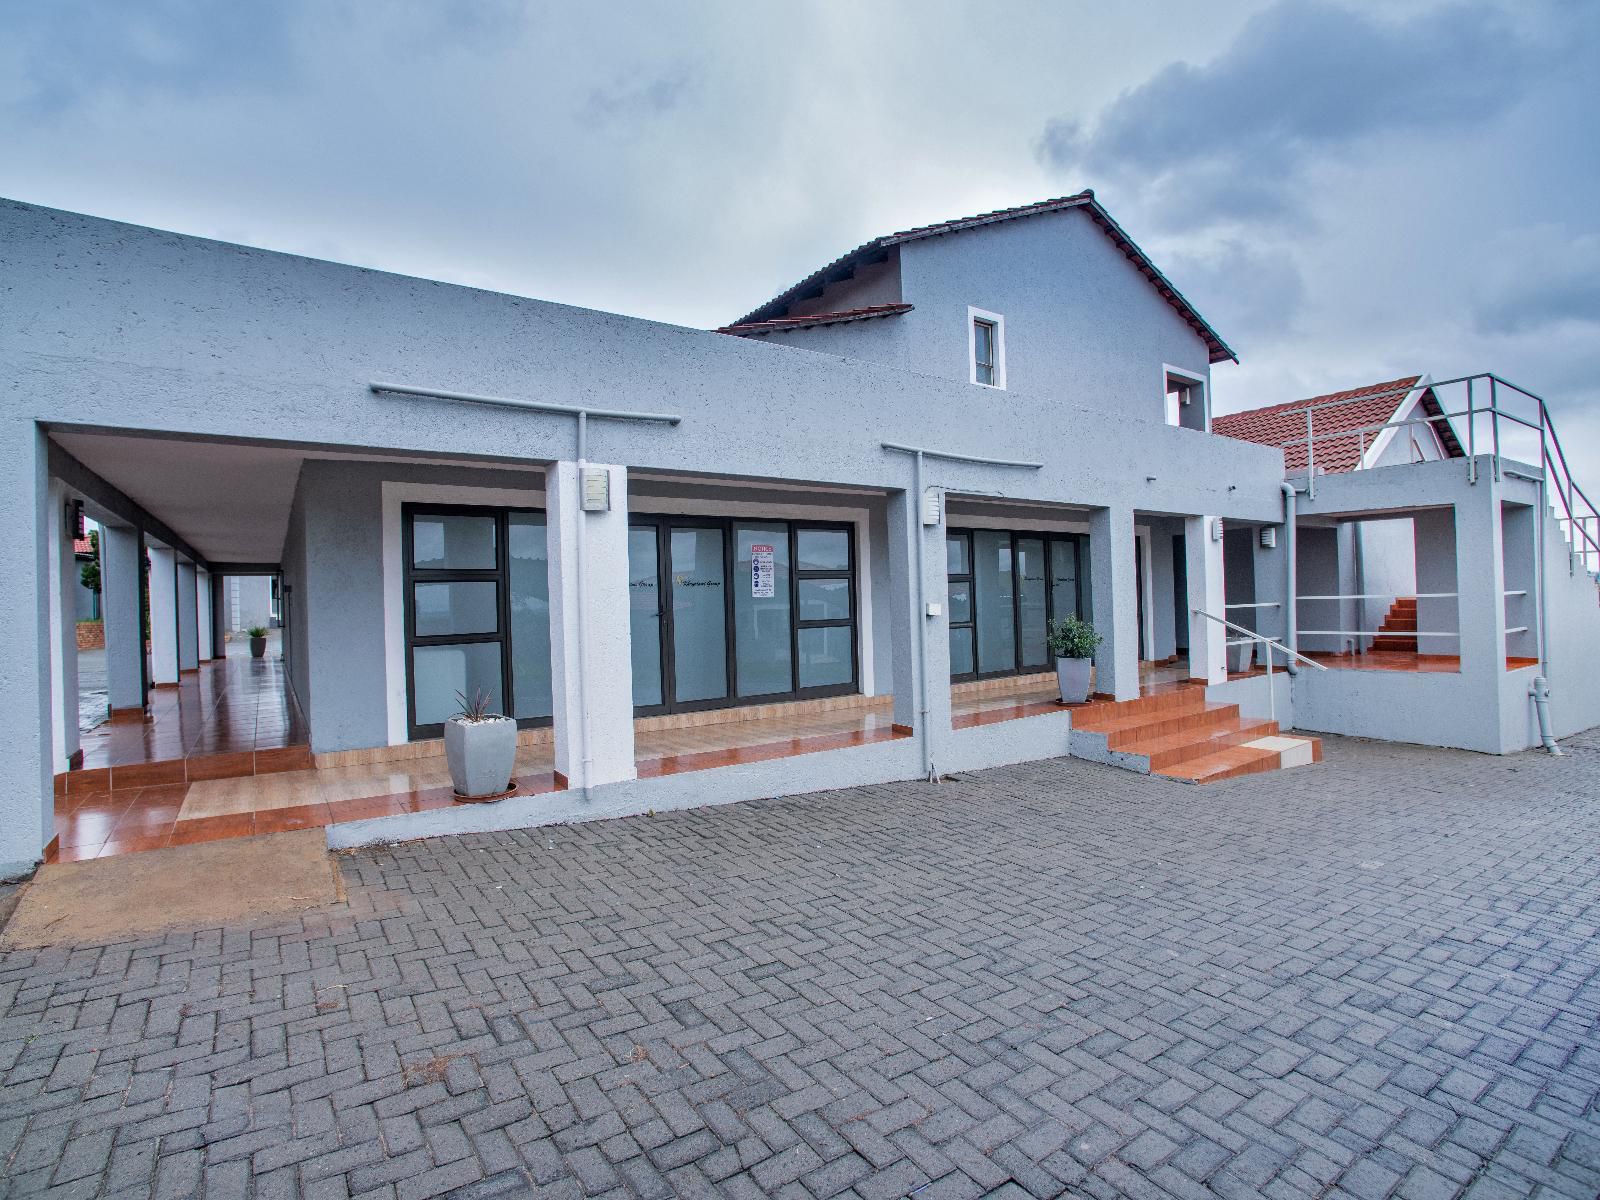 Khayalami Hotels Emalahleni Riverview Witbank Emalahleni Mpumalanga South Africa House, Building, Architecture